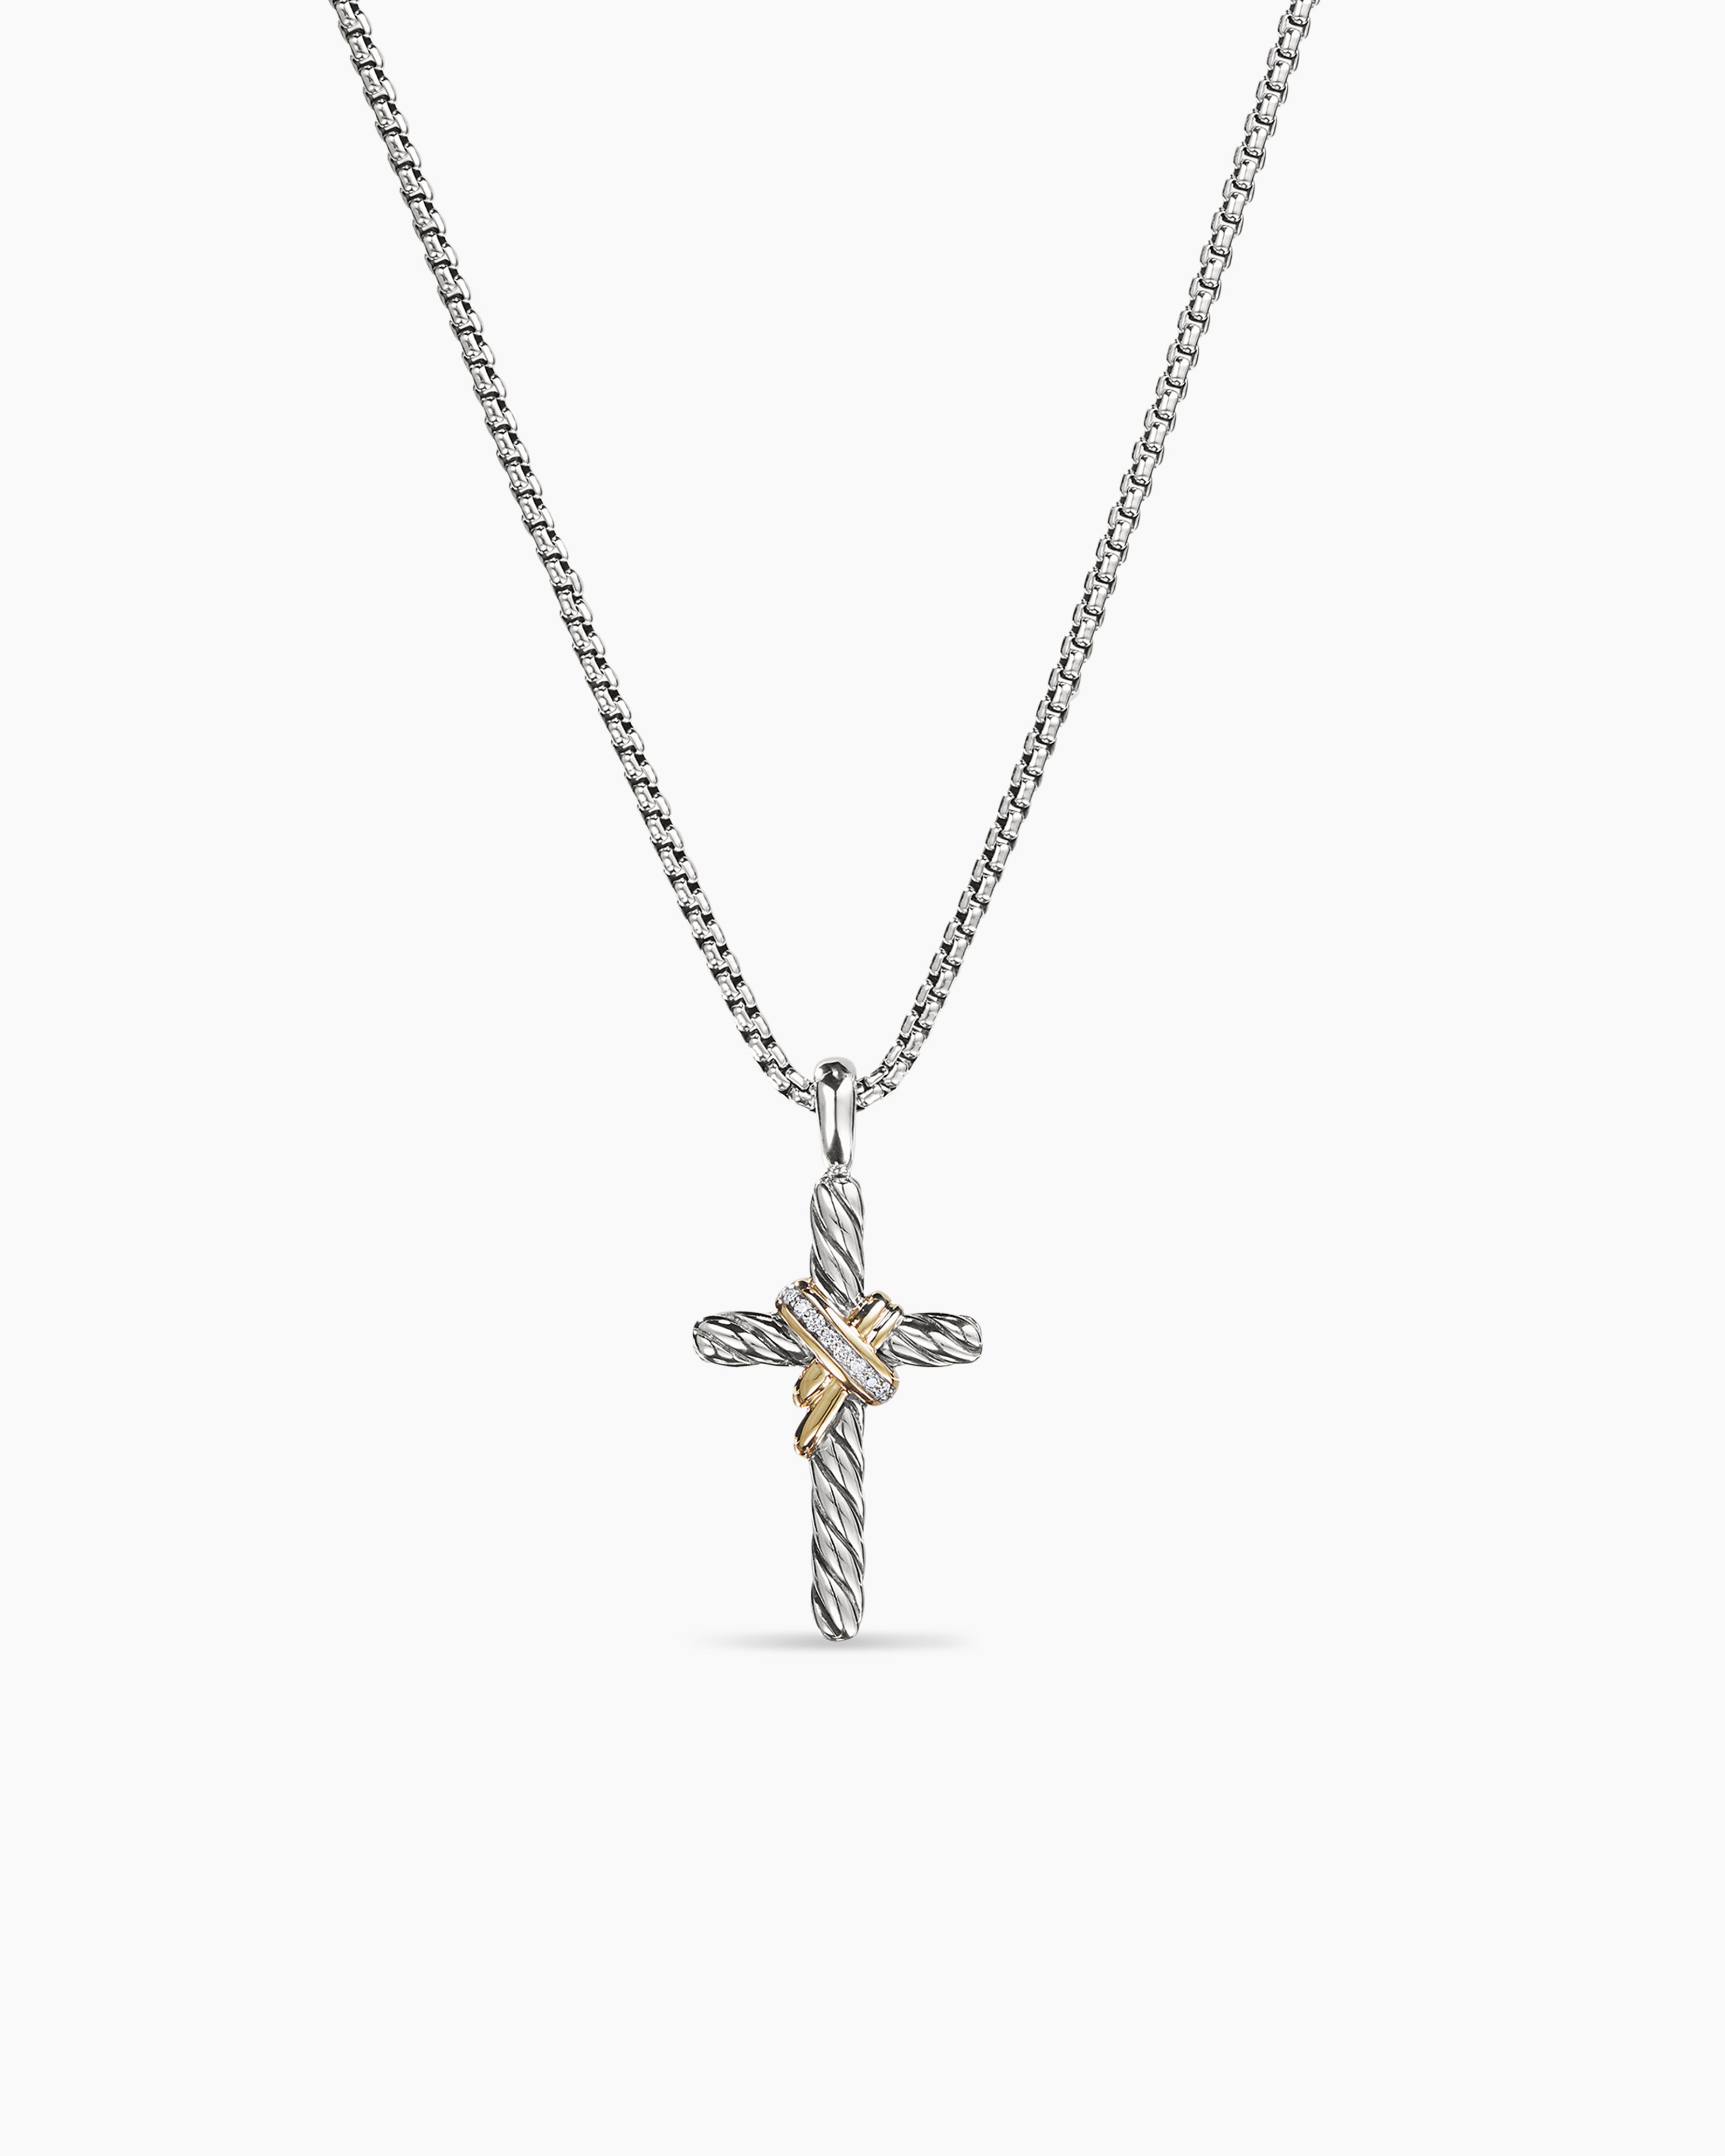 Cross necklace , Gold cross necklace , Cross necklace women , Gold cross necklace  women , 14k gold cross necklace ,cross necklace silver